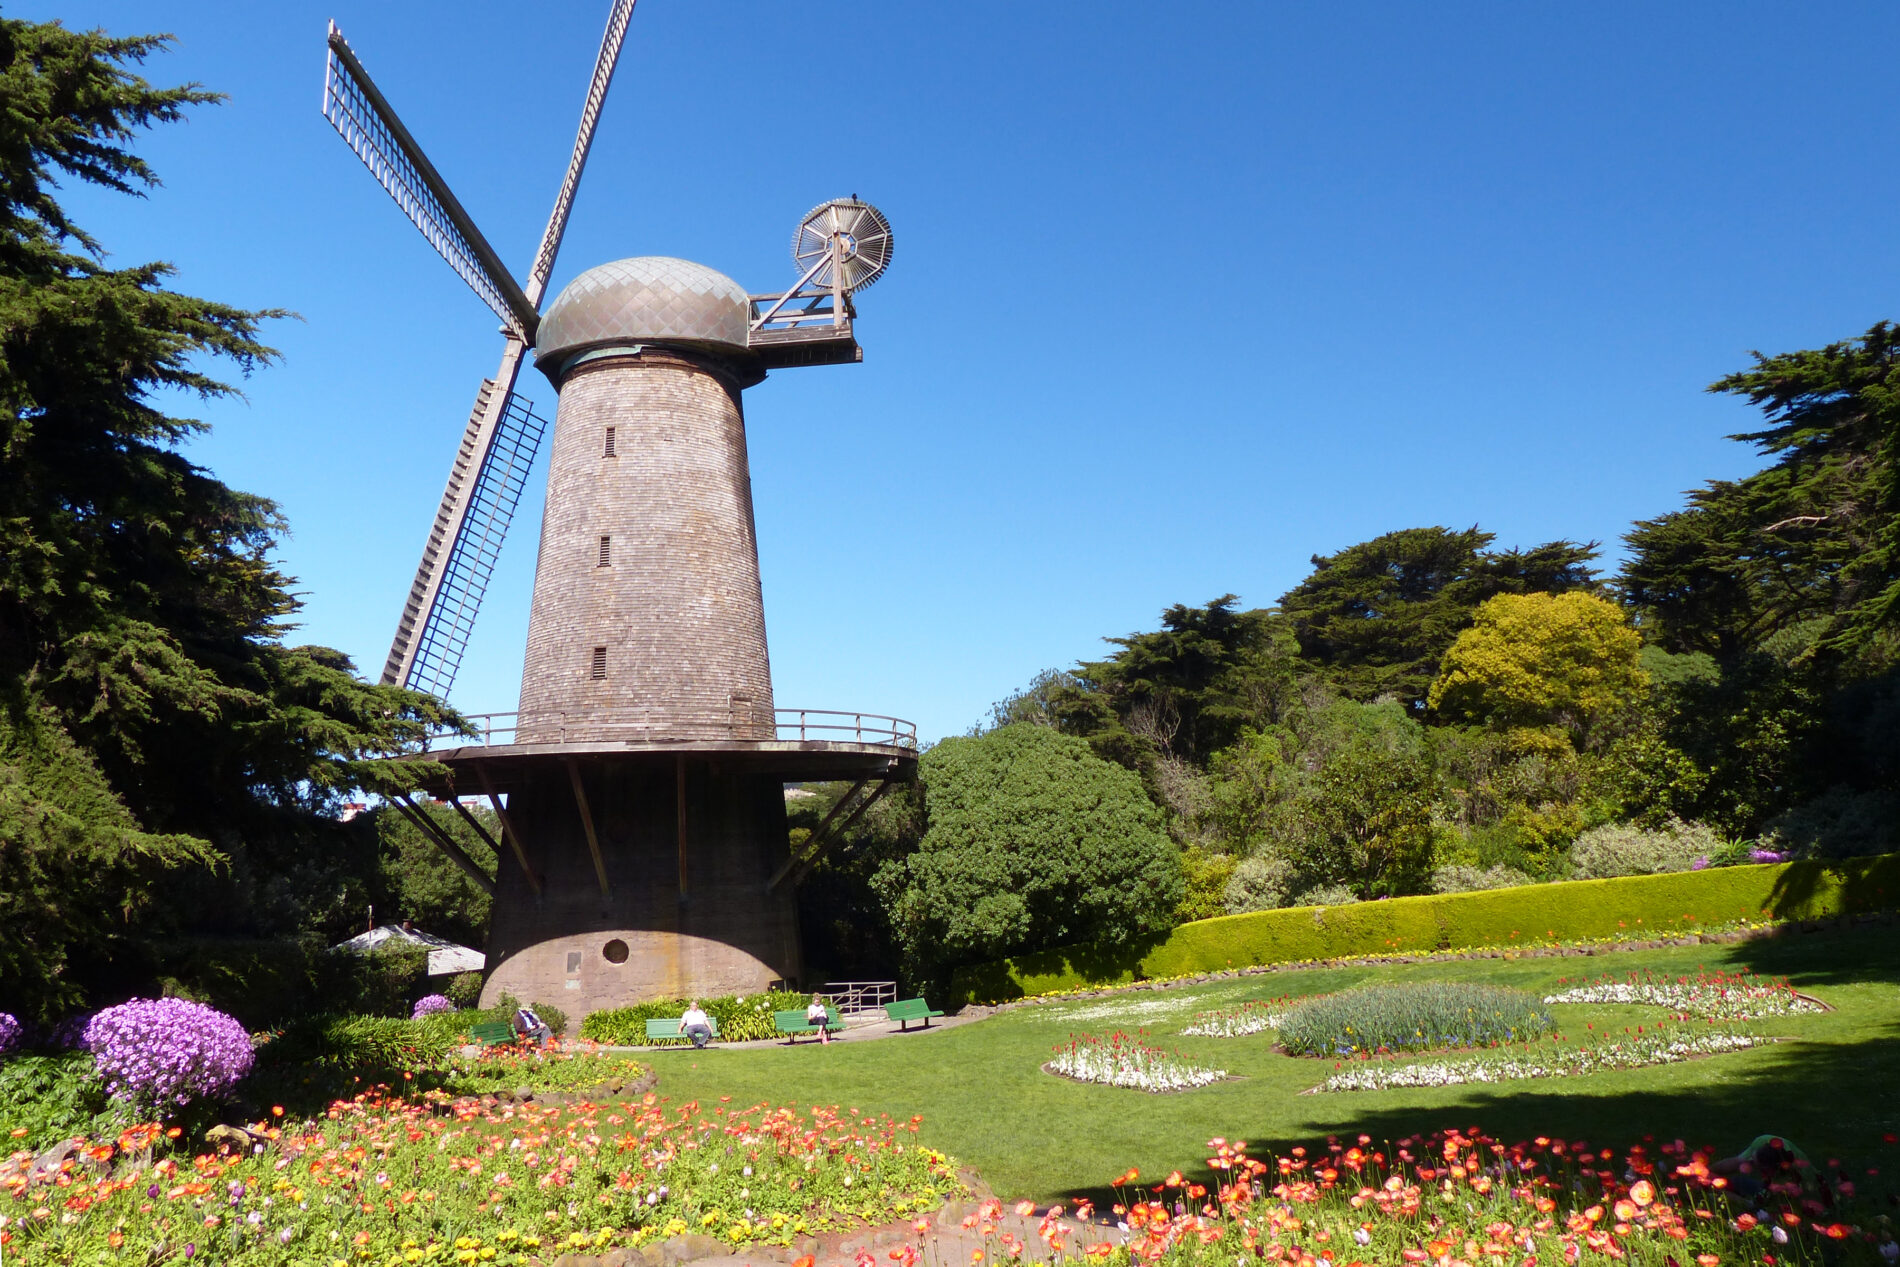 Queen Wilhelmina tulip garden and Old Dutch Windmill in Golden Gate Park.